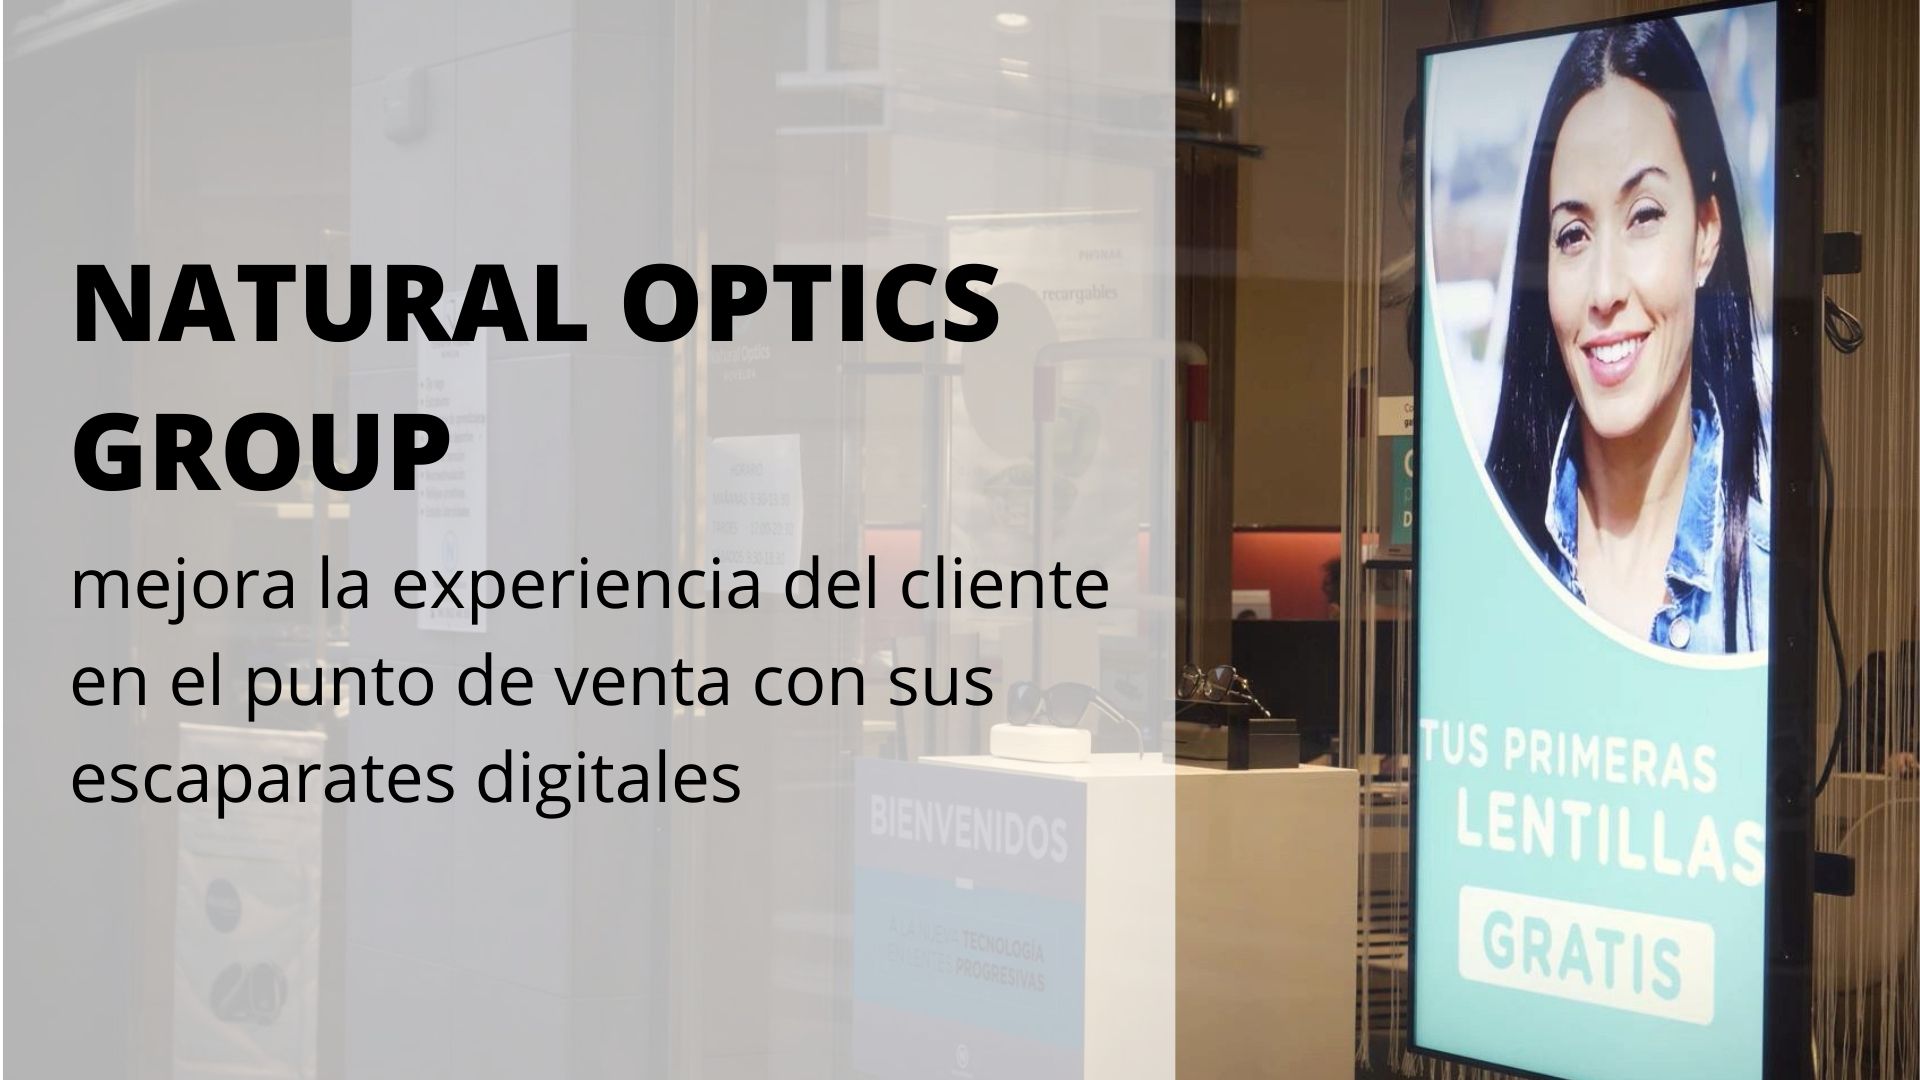 Natural Optics Group mejora la experiencia del cliente en el punto de venta con sus escaparates digitales